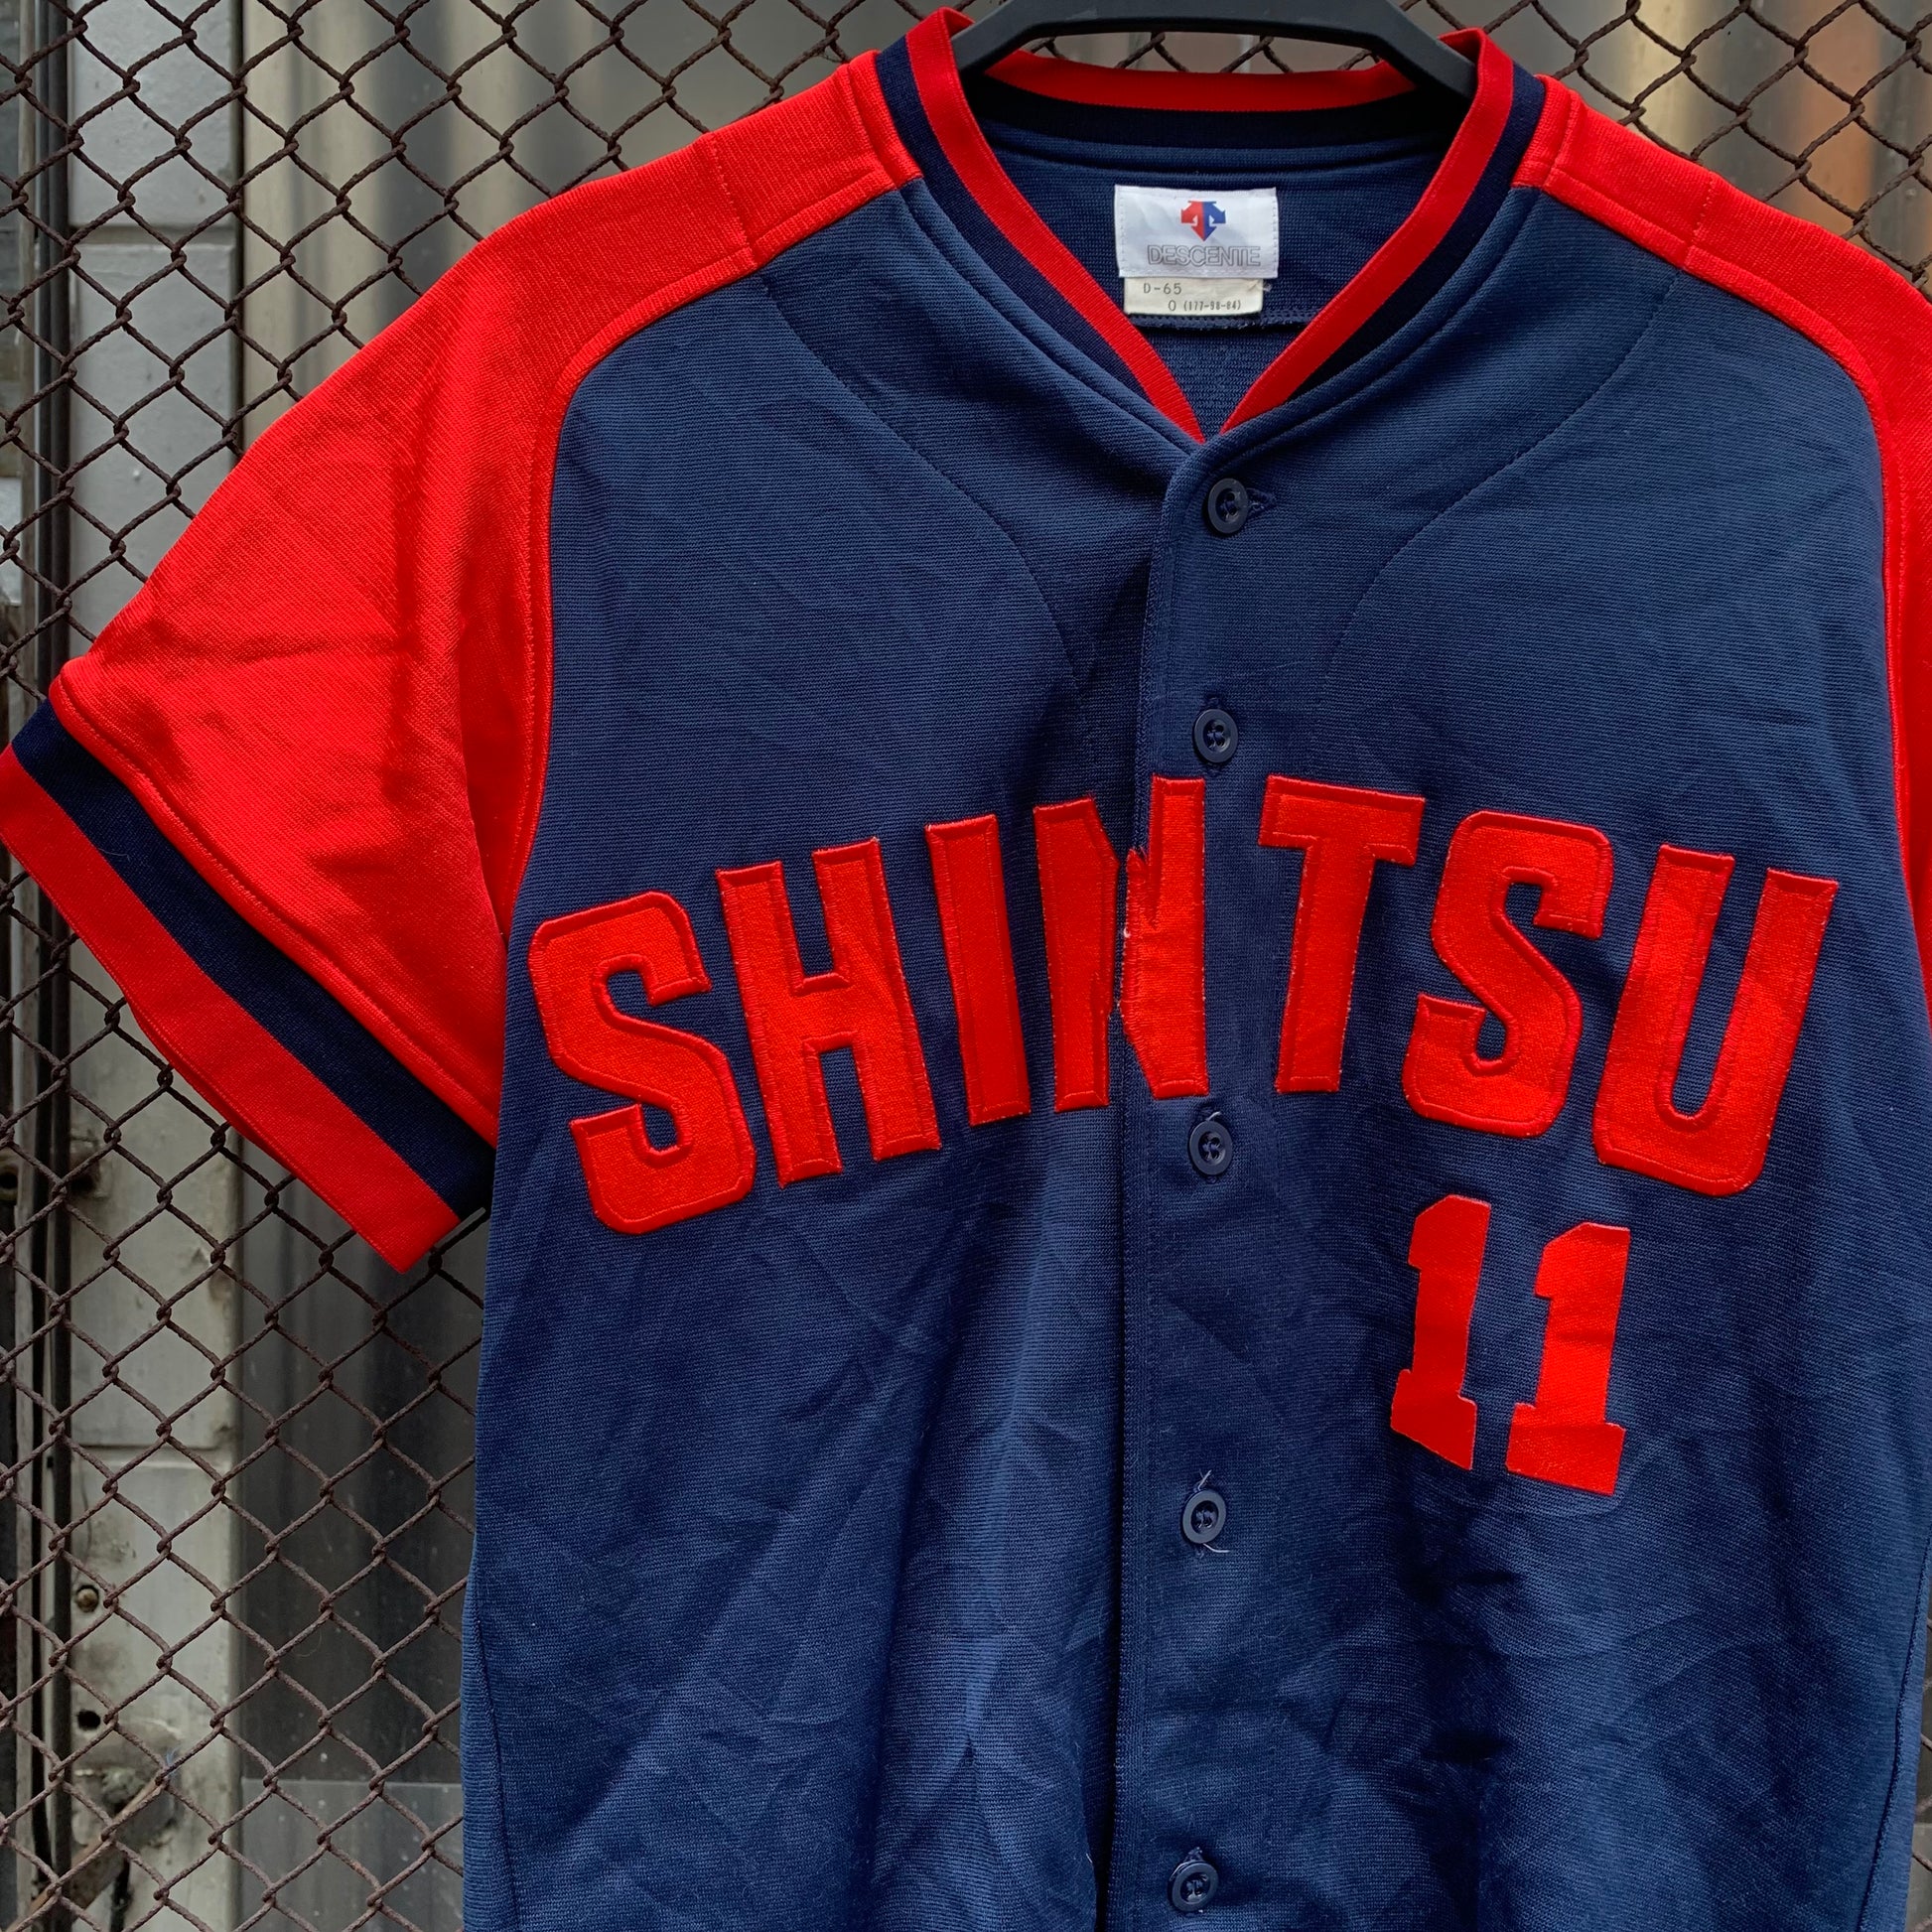 Japanese Baseball Jersey - Shintsu, 11